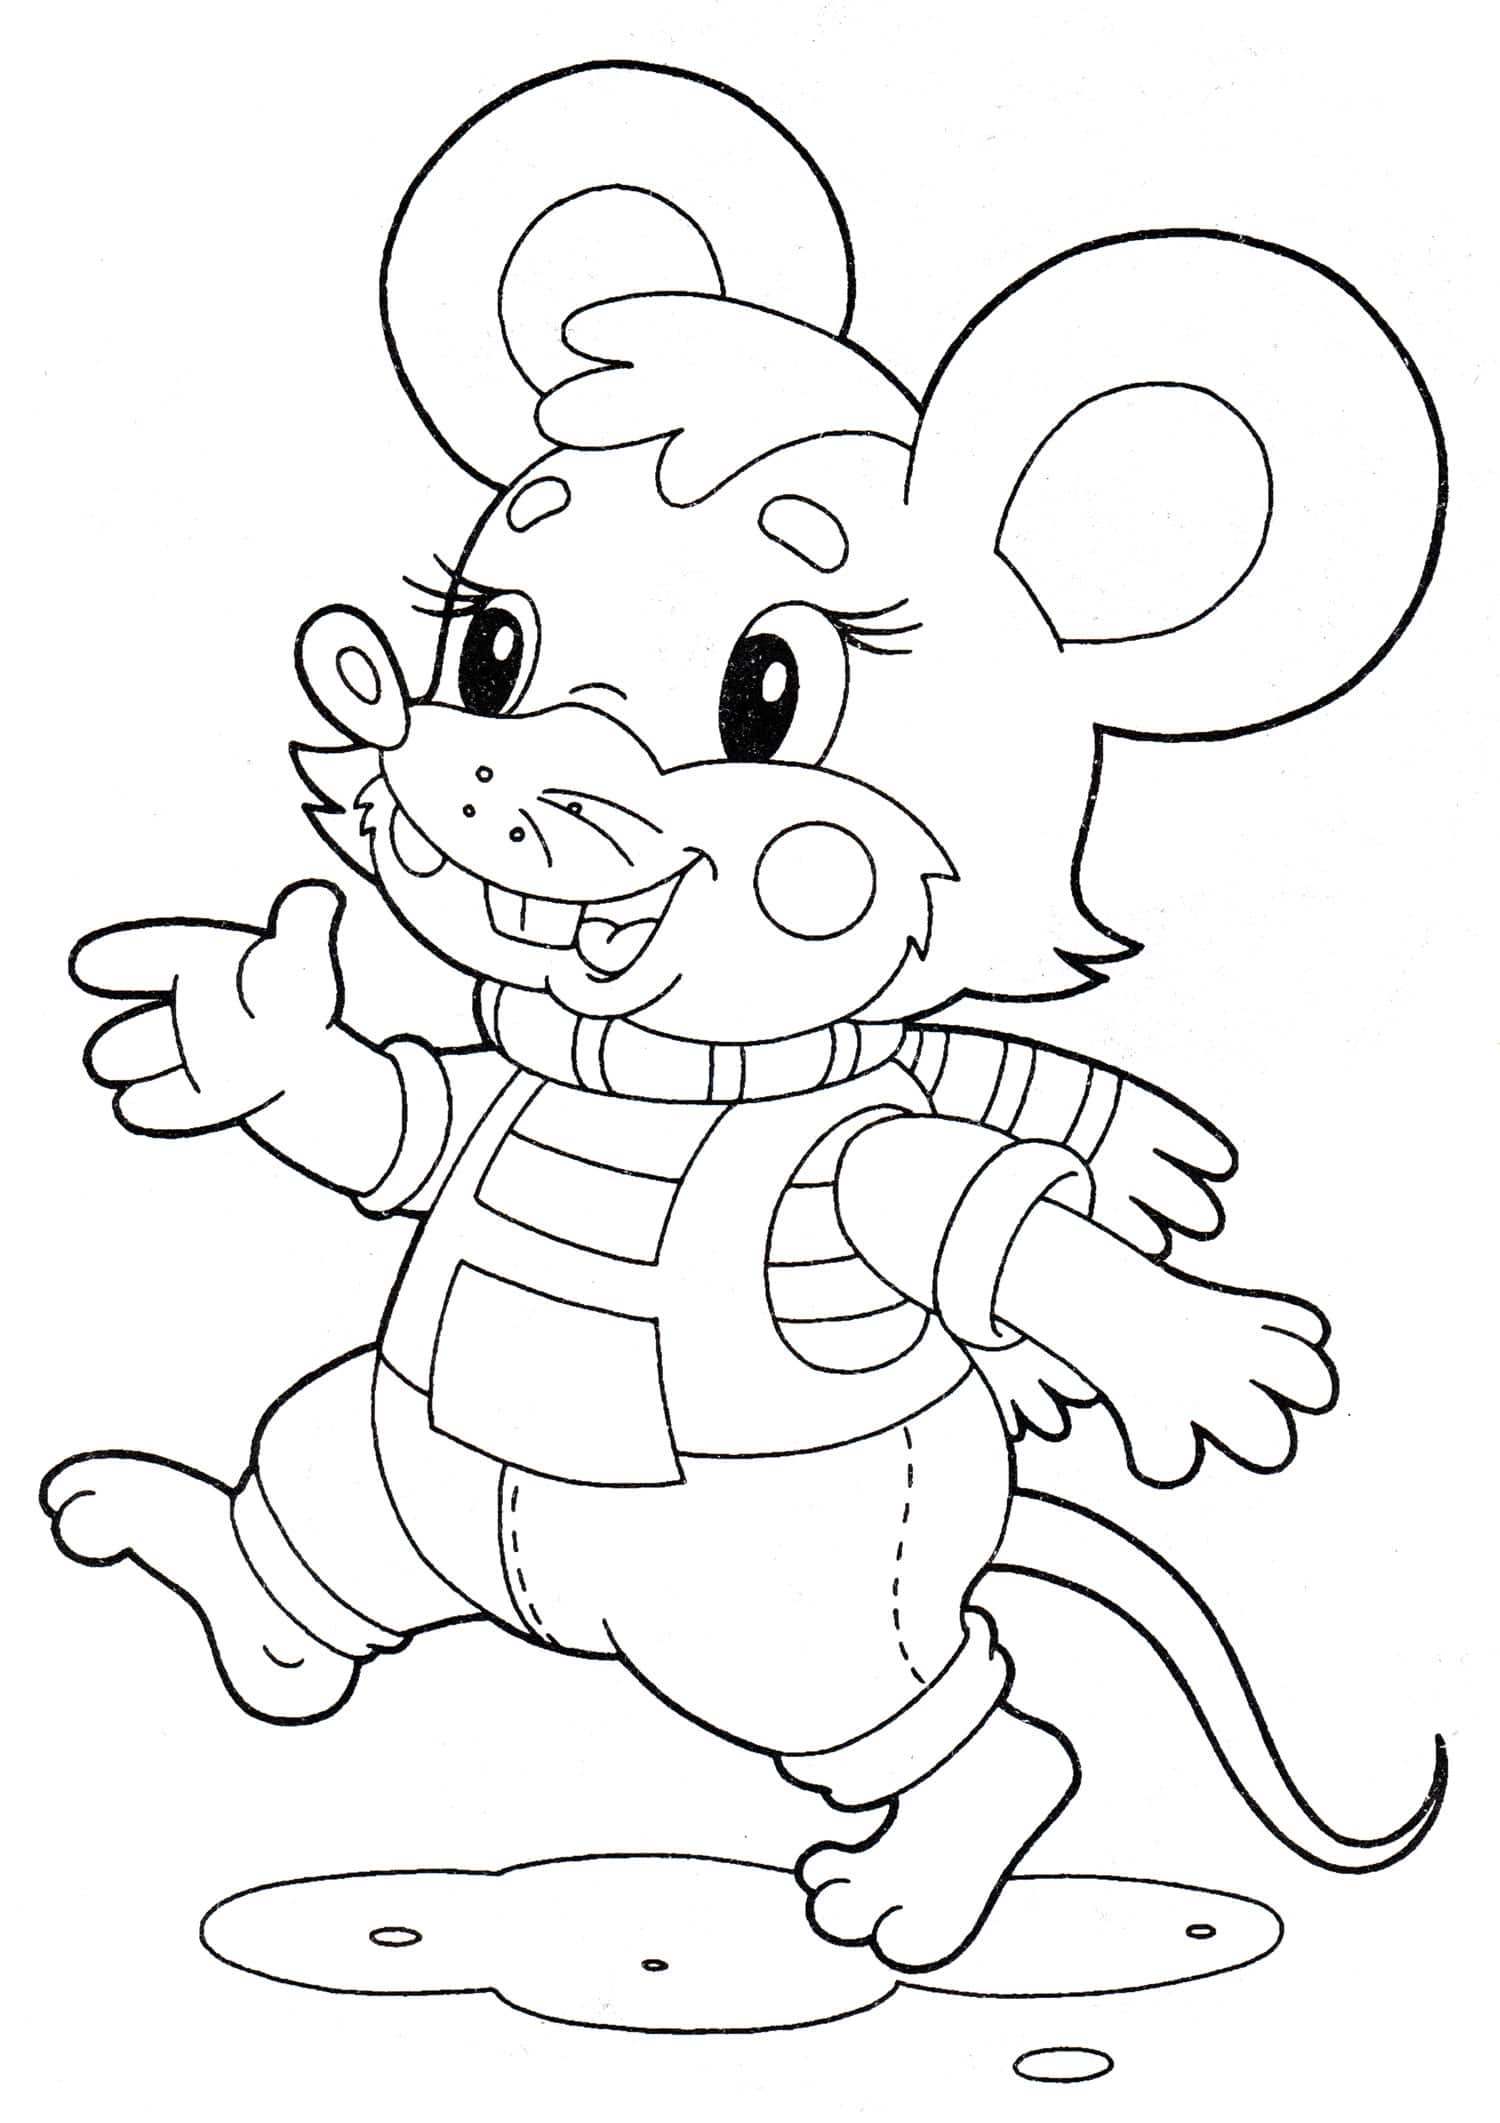 דף צביעה ציור לצביעה של עכבר קטן עם צעיף